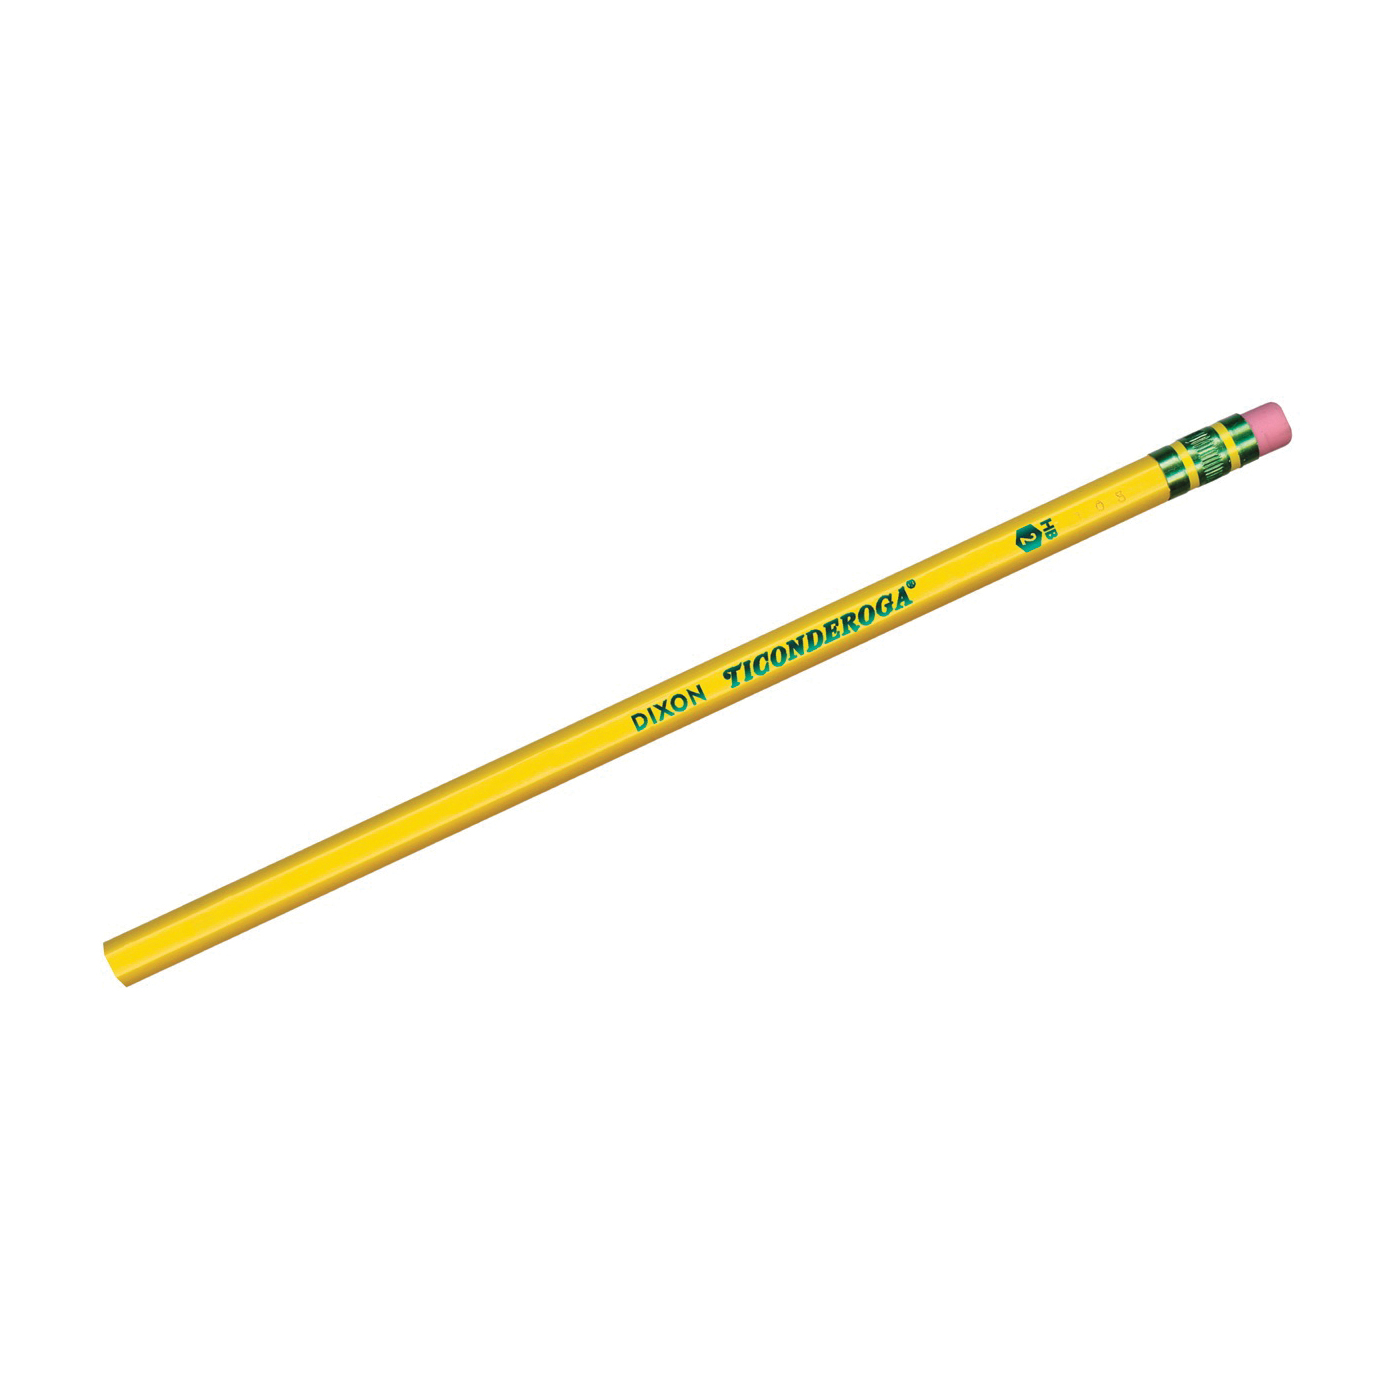 Ticonderoga 13882 Pencil, Soft Lead, Wood Barrel - 1